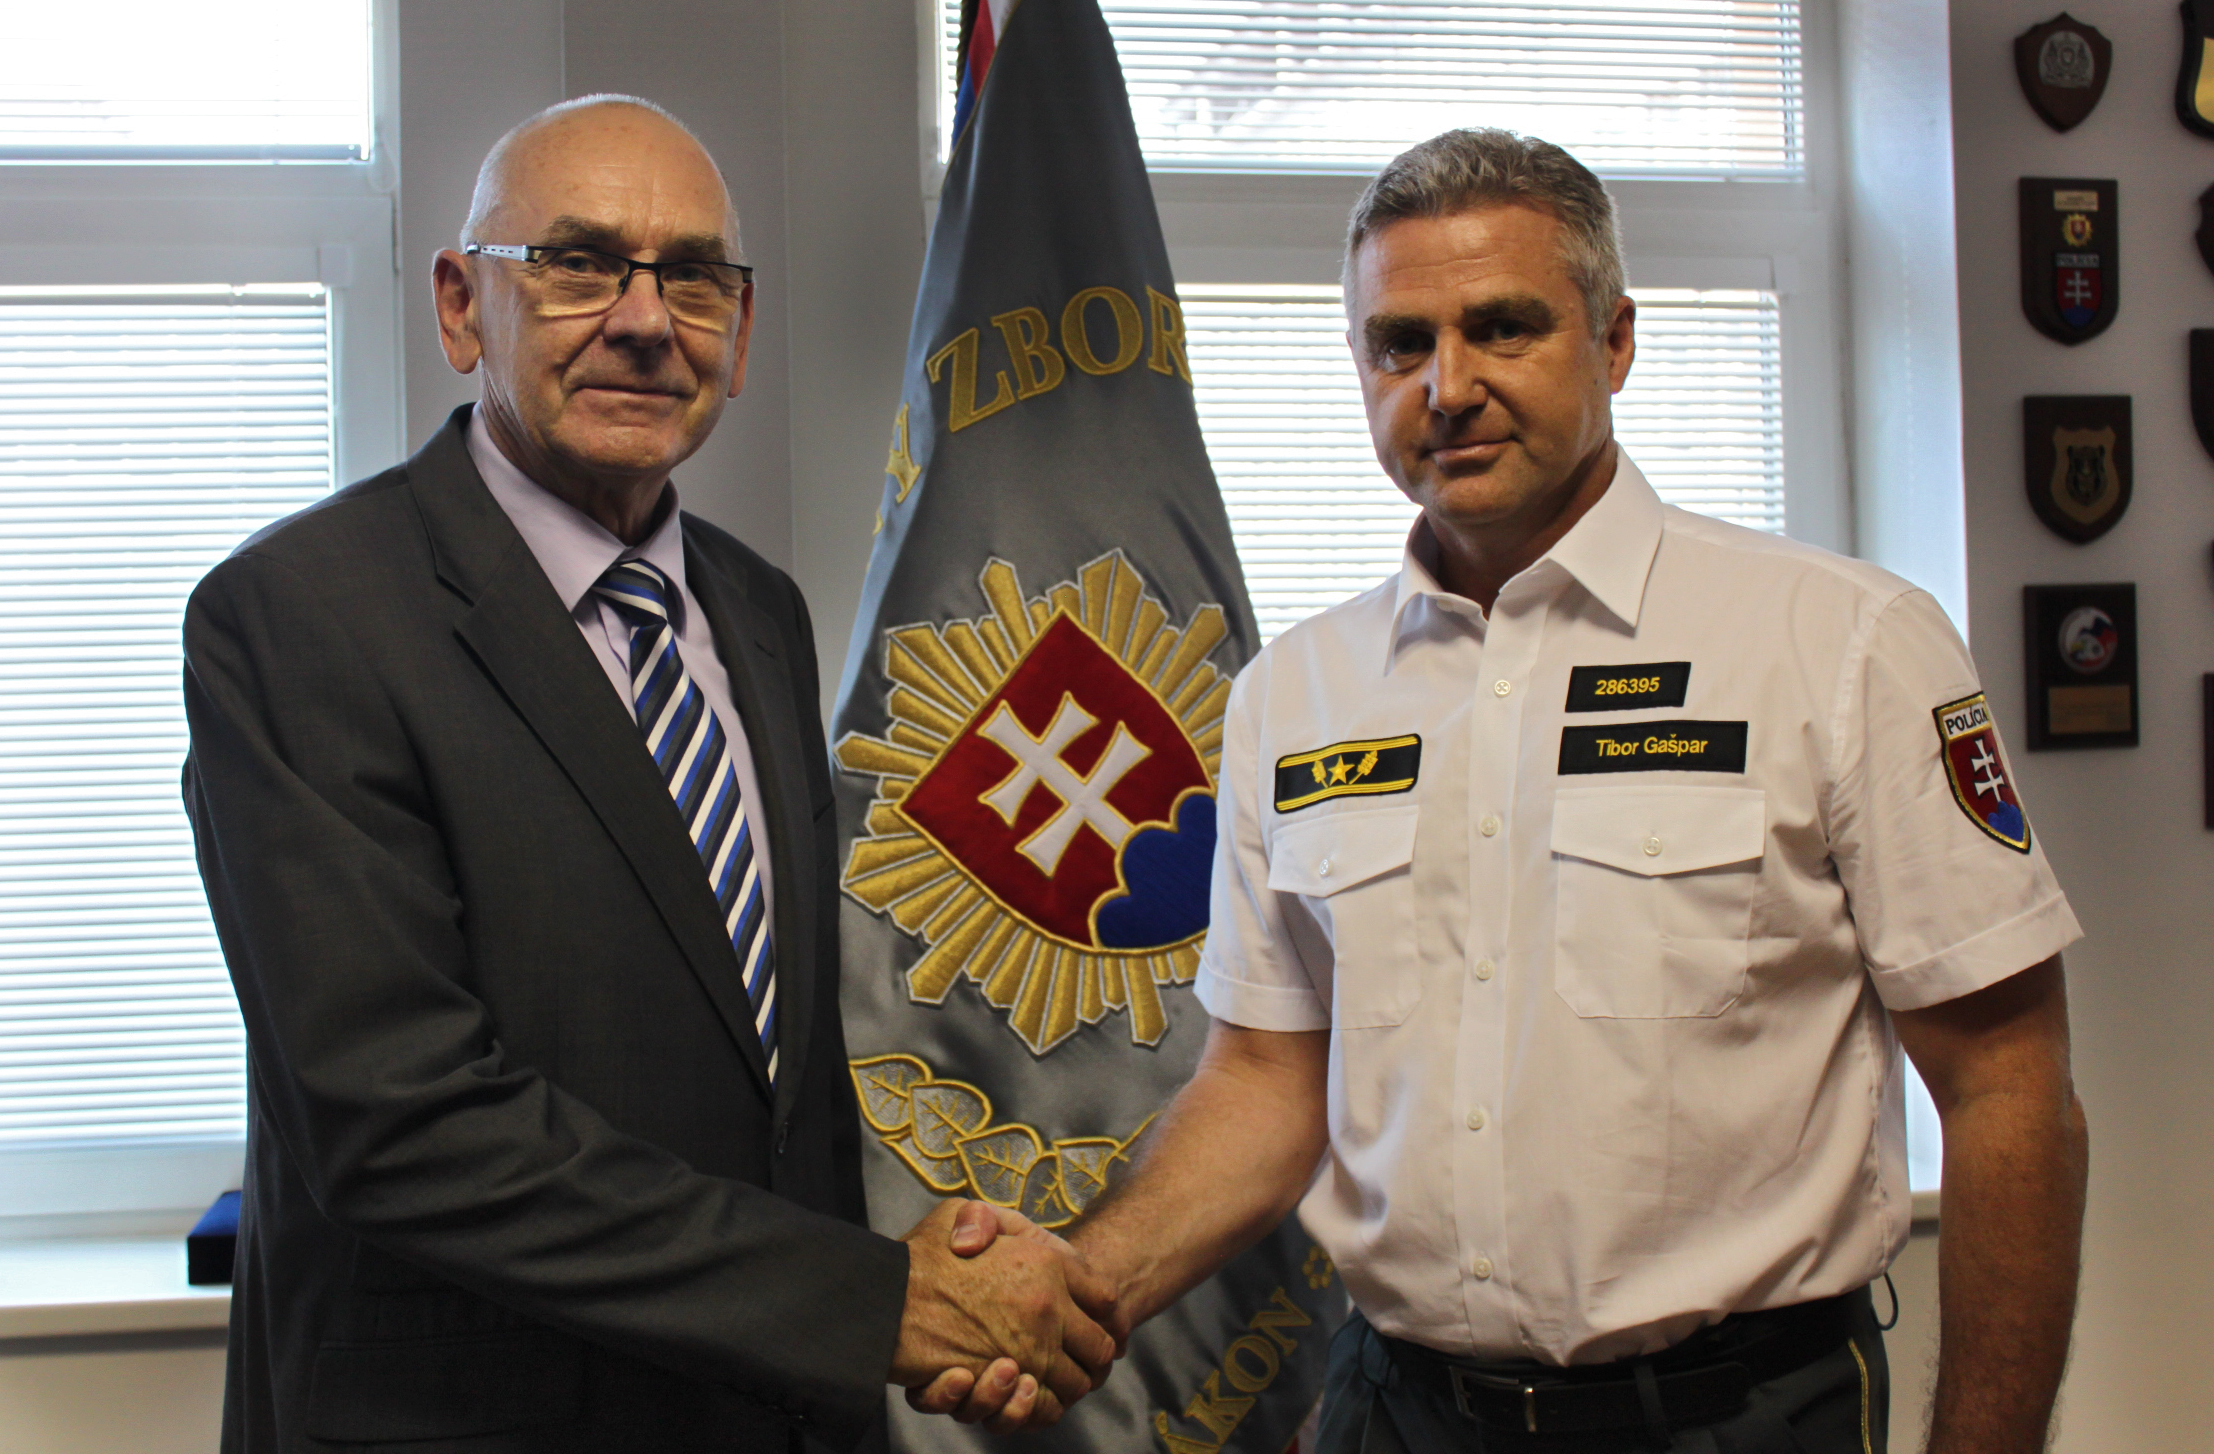 Karol Mitrík sa stretol s prezidentom policajného zboru Tiborom Gašparom